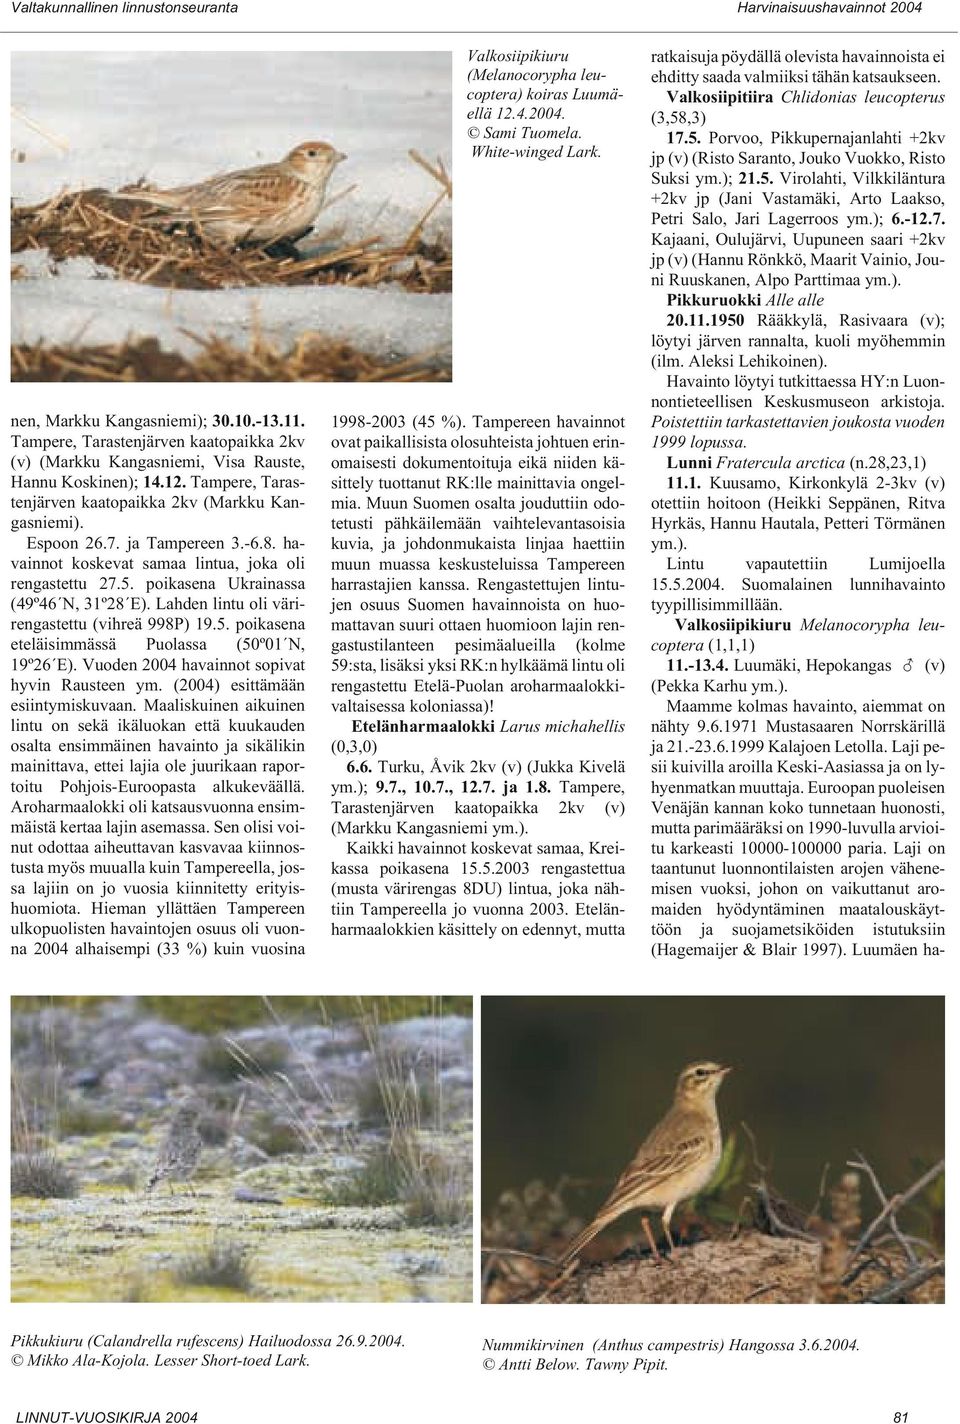 Lahden lintu oli värirengastettu (vihreä 998P) 19.5. poikasena eteläisimmässä Puolassa (50º01 N, 19º26 E). Vuoden 2004 havainnot sopivat hyvin Rausteen ym. (2004) esittämään esiintymiskuvaan.